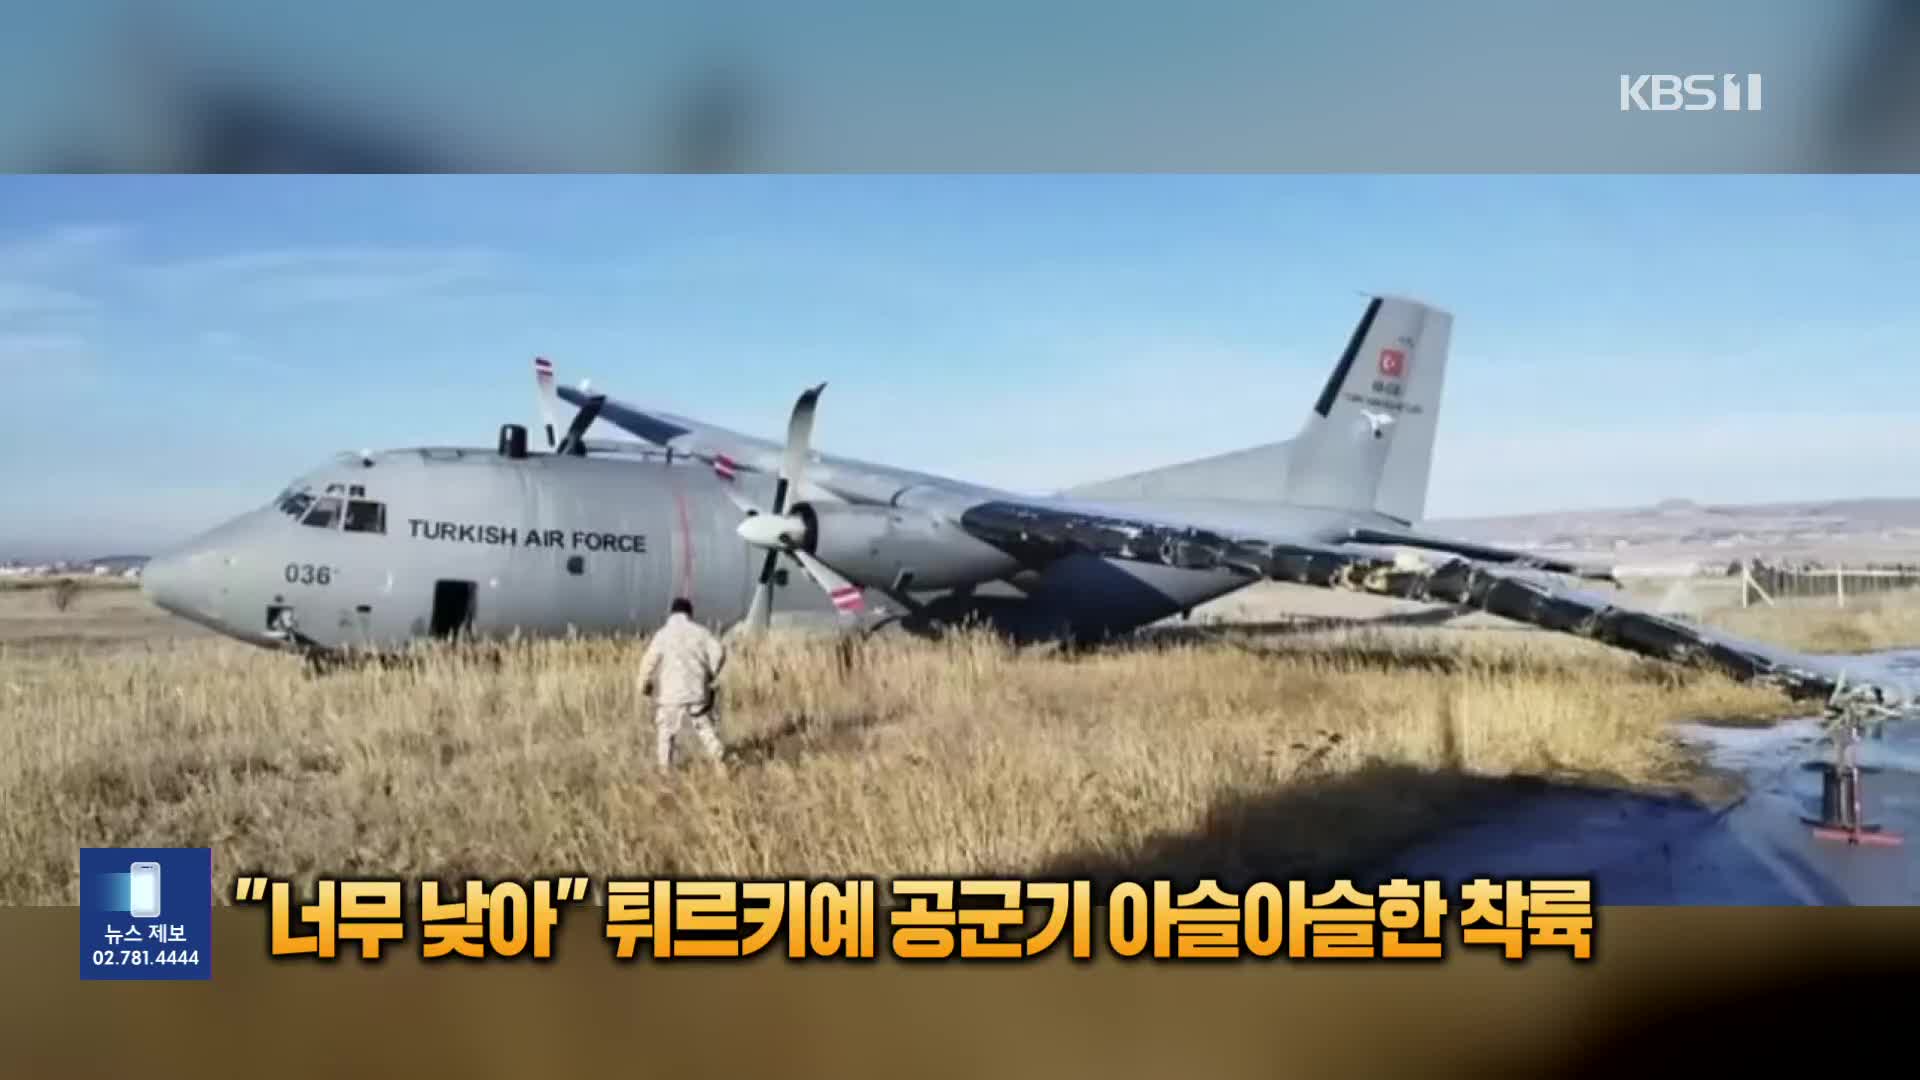 [잇슈 SNS] “너무 낮아” 튀르키예 공군기 아슬아슬한 착륙